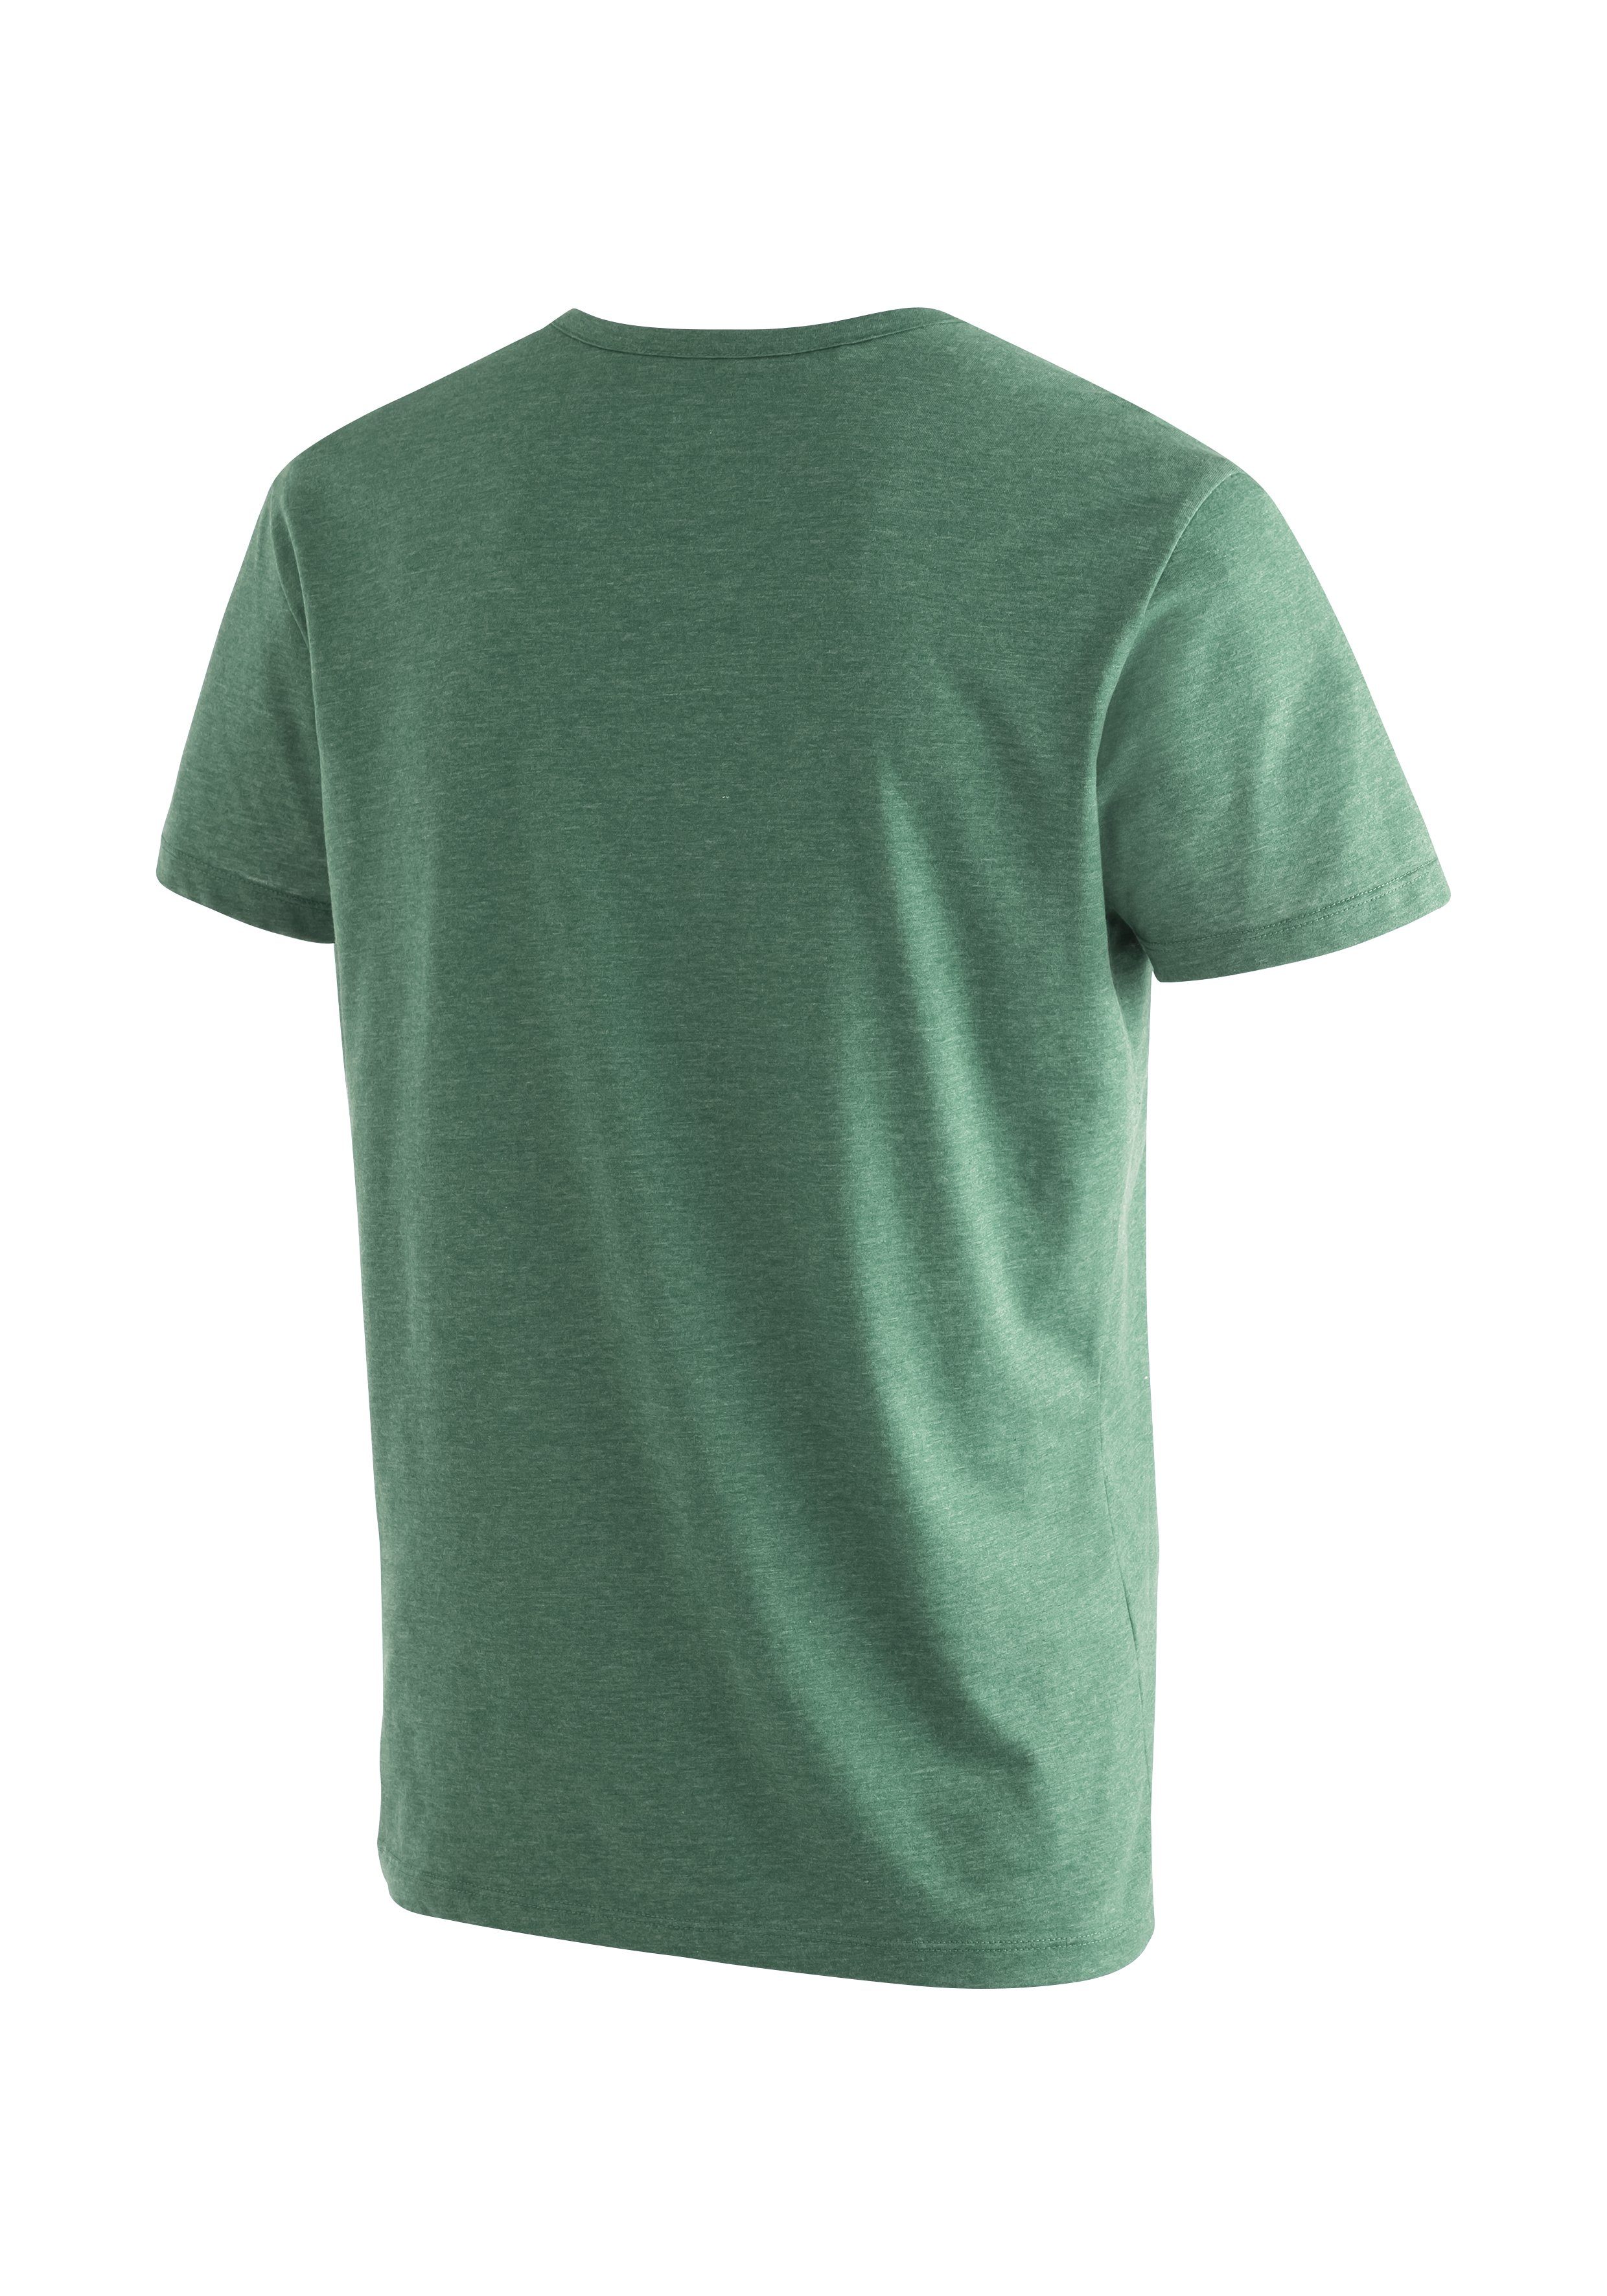 Melange-Optik in M Maier Funktionsshirt Coffee Break ansprechender Sports T-Shirt hellgrün Vielseitiges